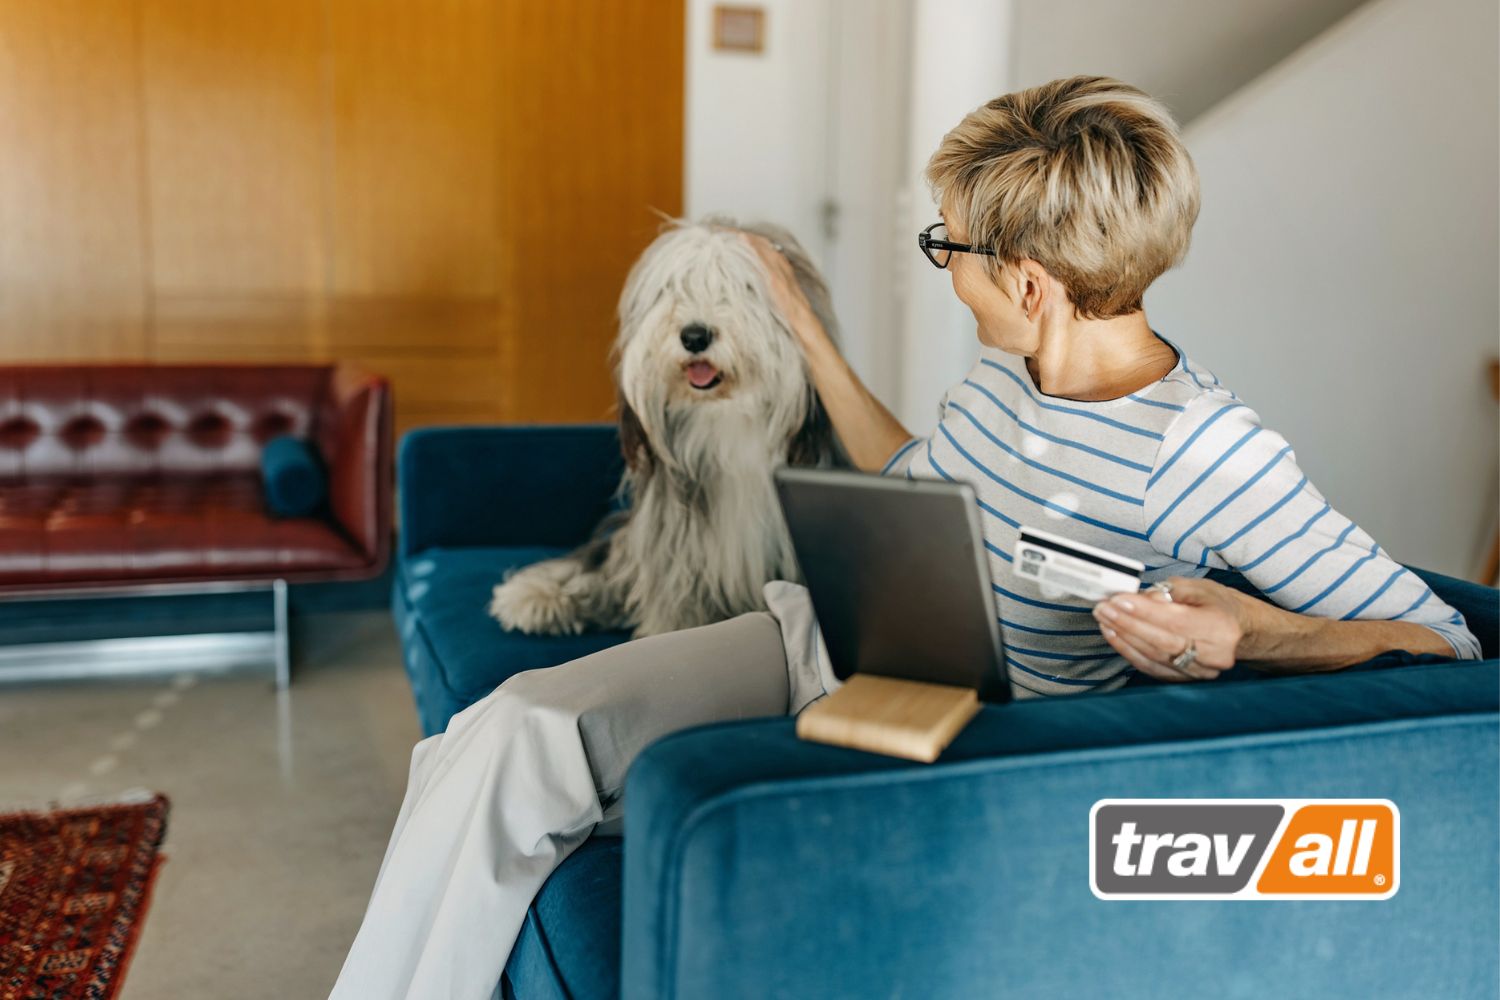 Wer einen Hund im Auto transportieren möchte, kann passendes Autozubehör online bei Travall bestellen.© Travall